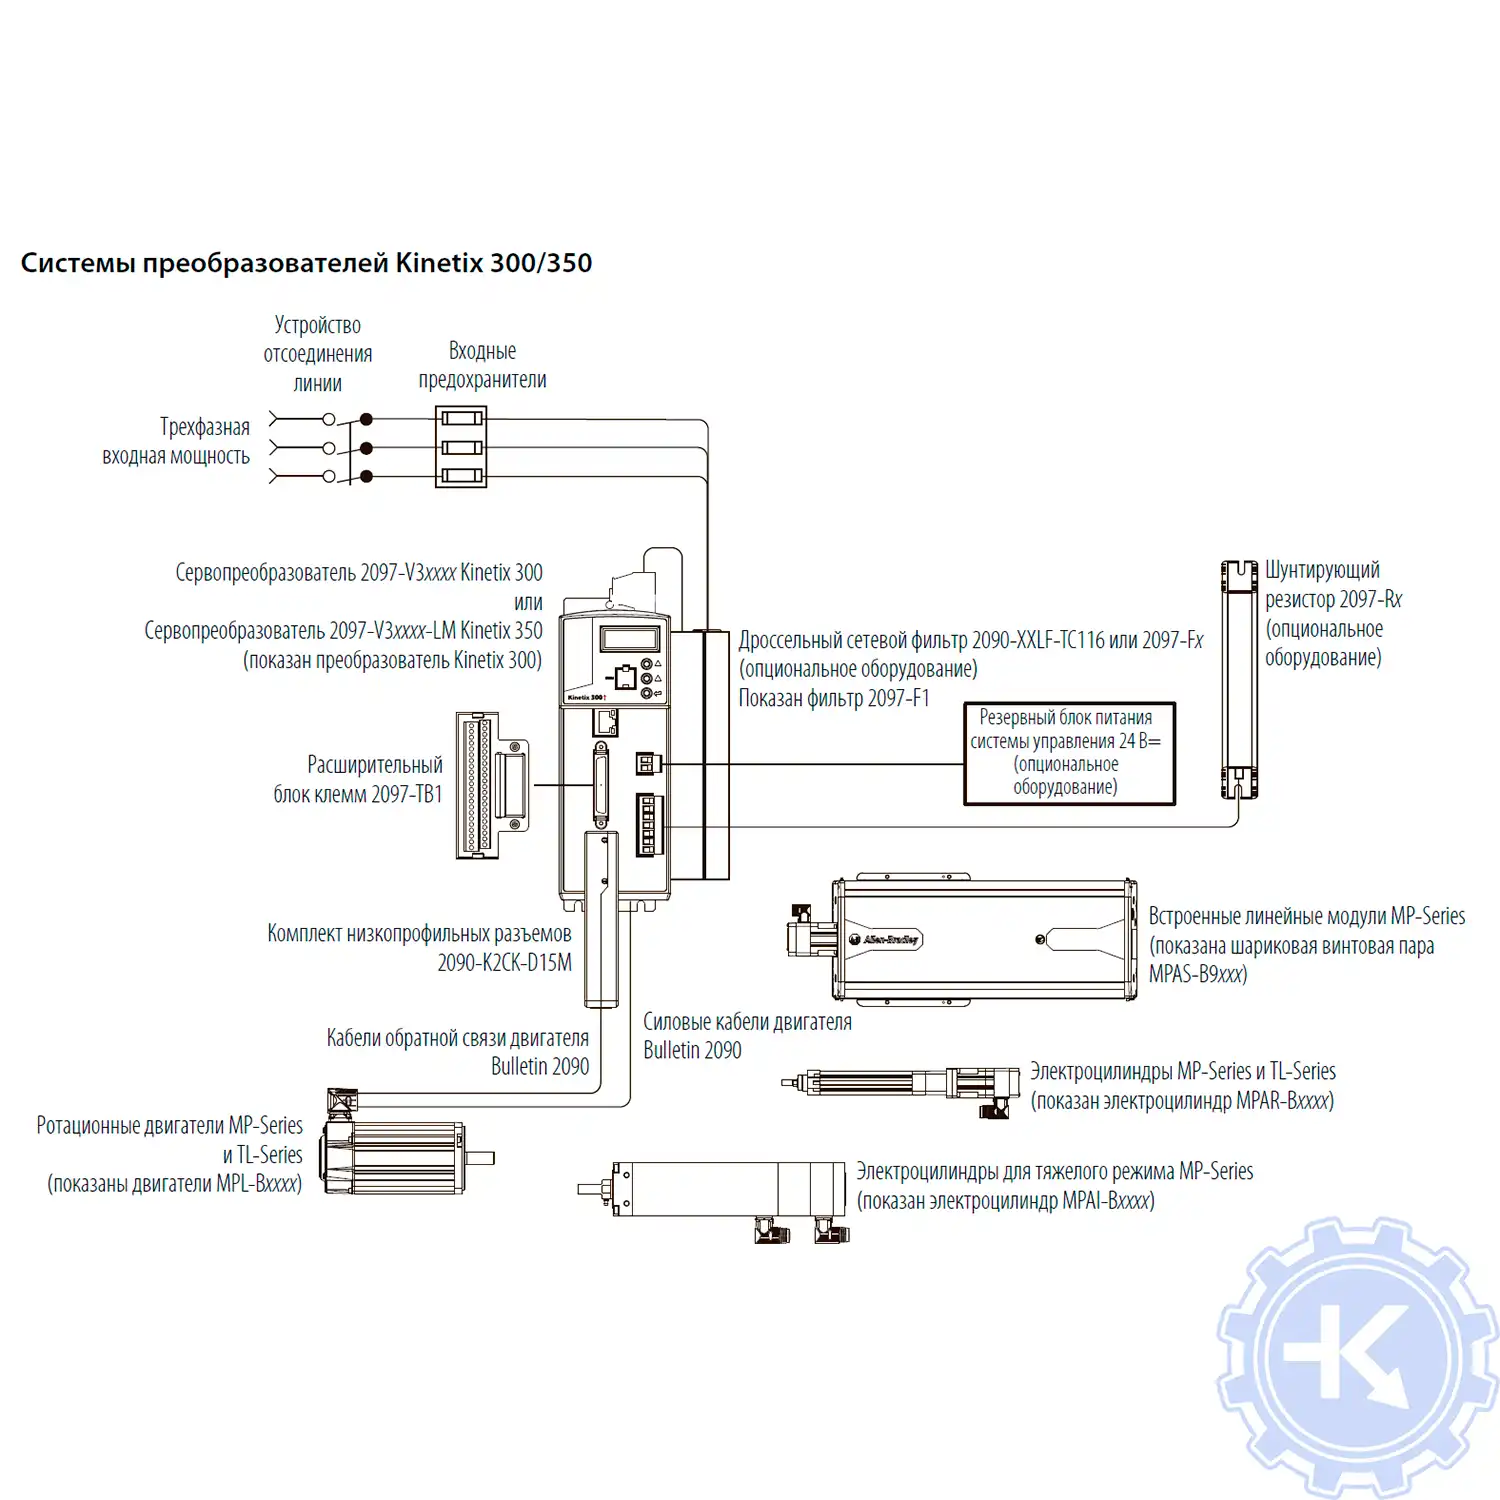 Базовая схема соединений для системы преобразователей Kinetix 300/350